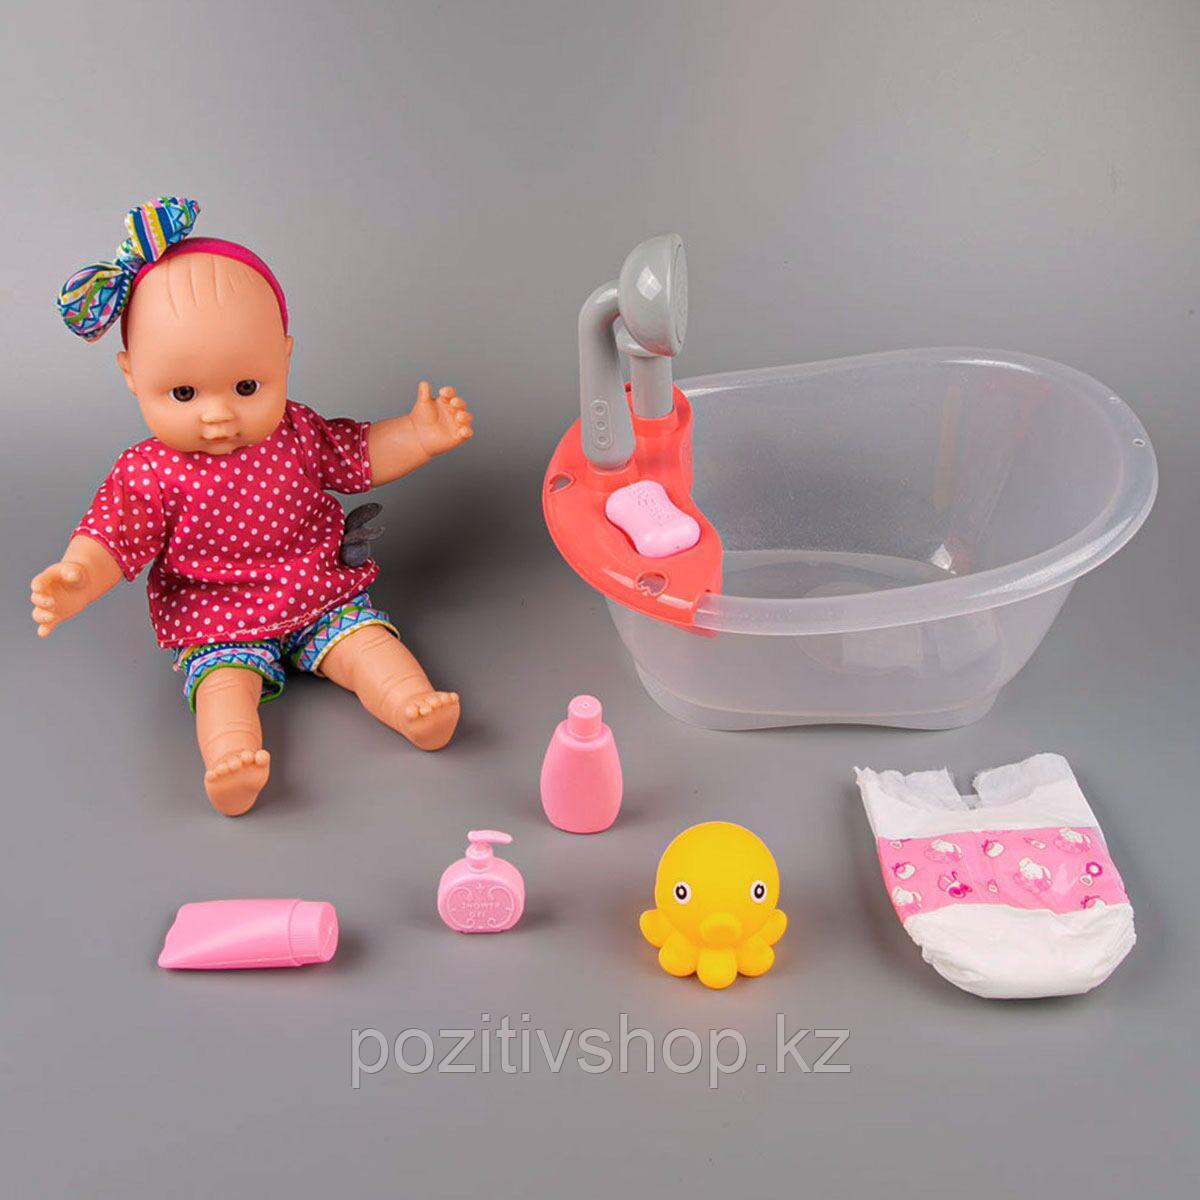 Игровой набор пупс Baby с ванной и аксессуарами